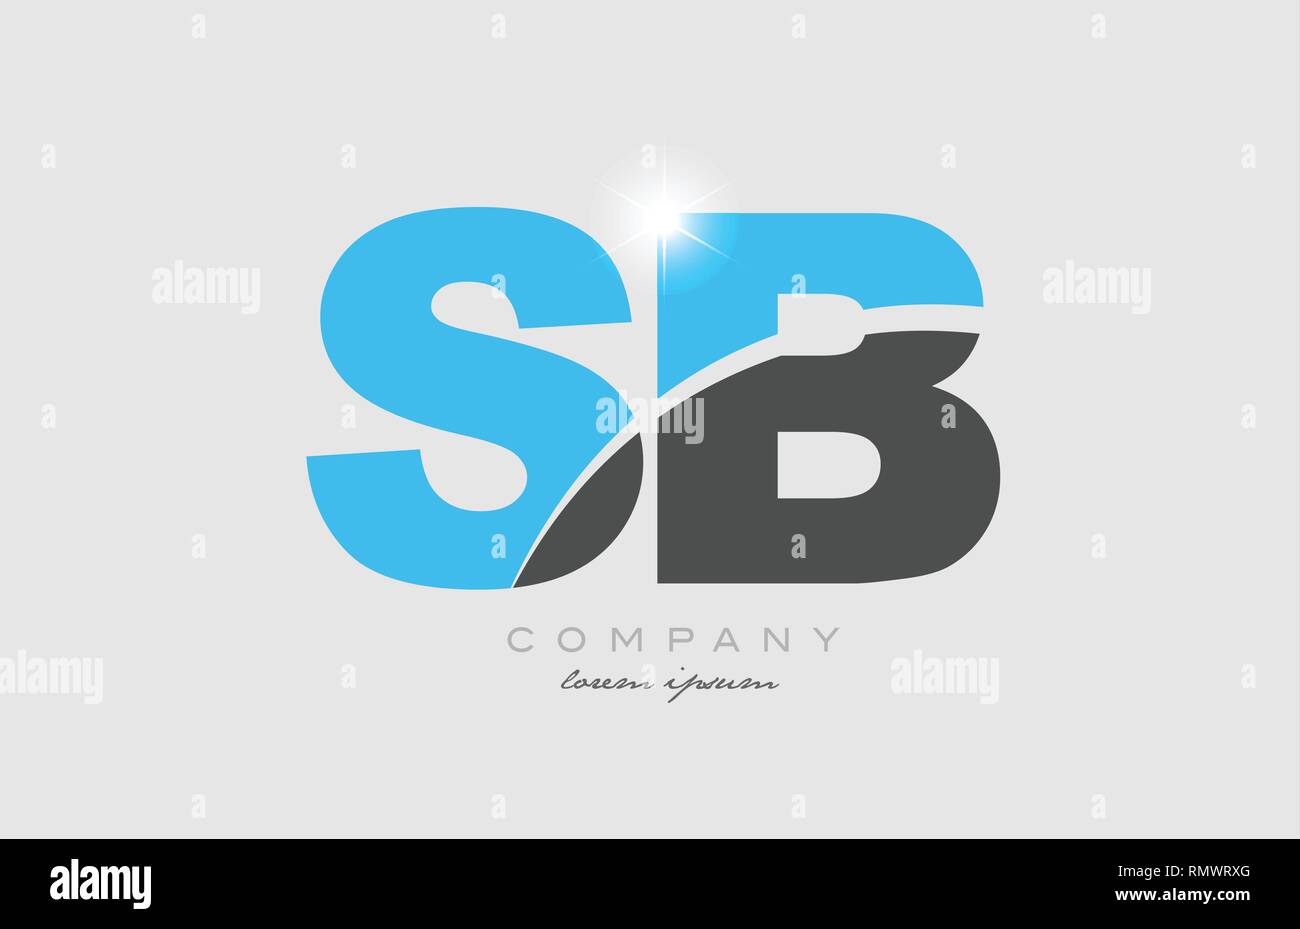 Kombination schreiben sb s b in Graublau Alphabet logo Icon Design geeignet für ein Unternehmen oder ein Geschäft Stock Vektor